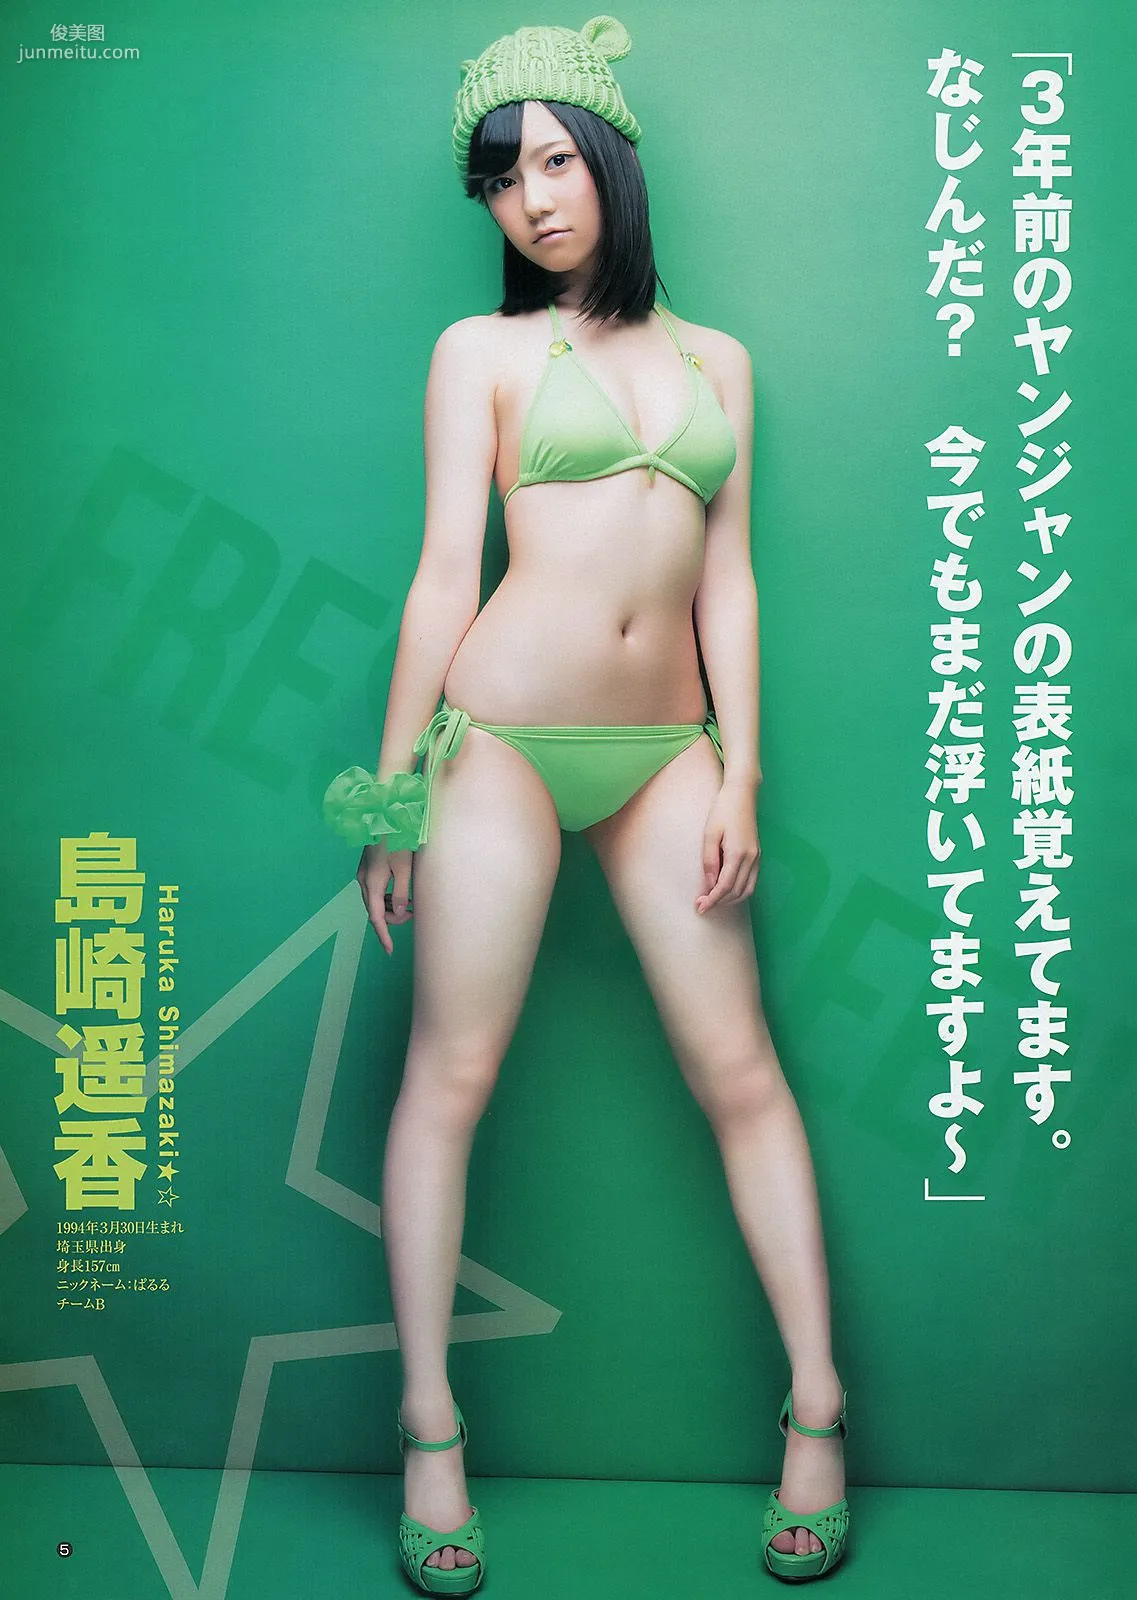 AKB48 入山杏奈 [週刊ヤングジャンプ] 2012年No.49 写真杂志6